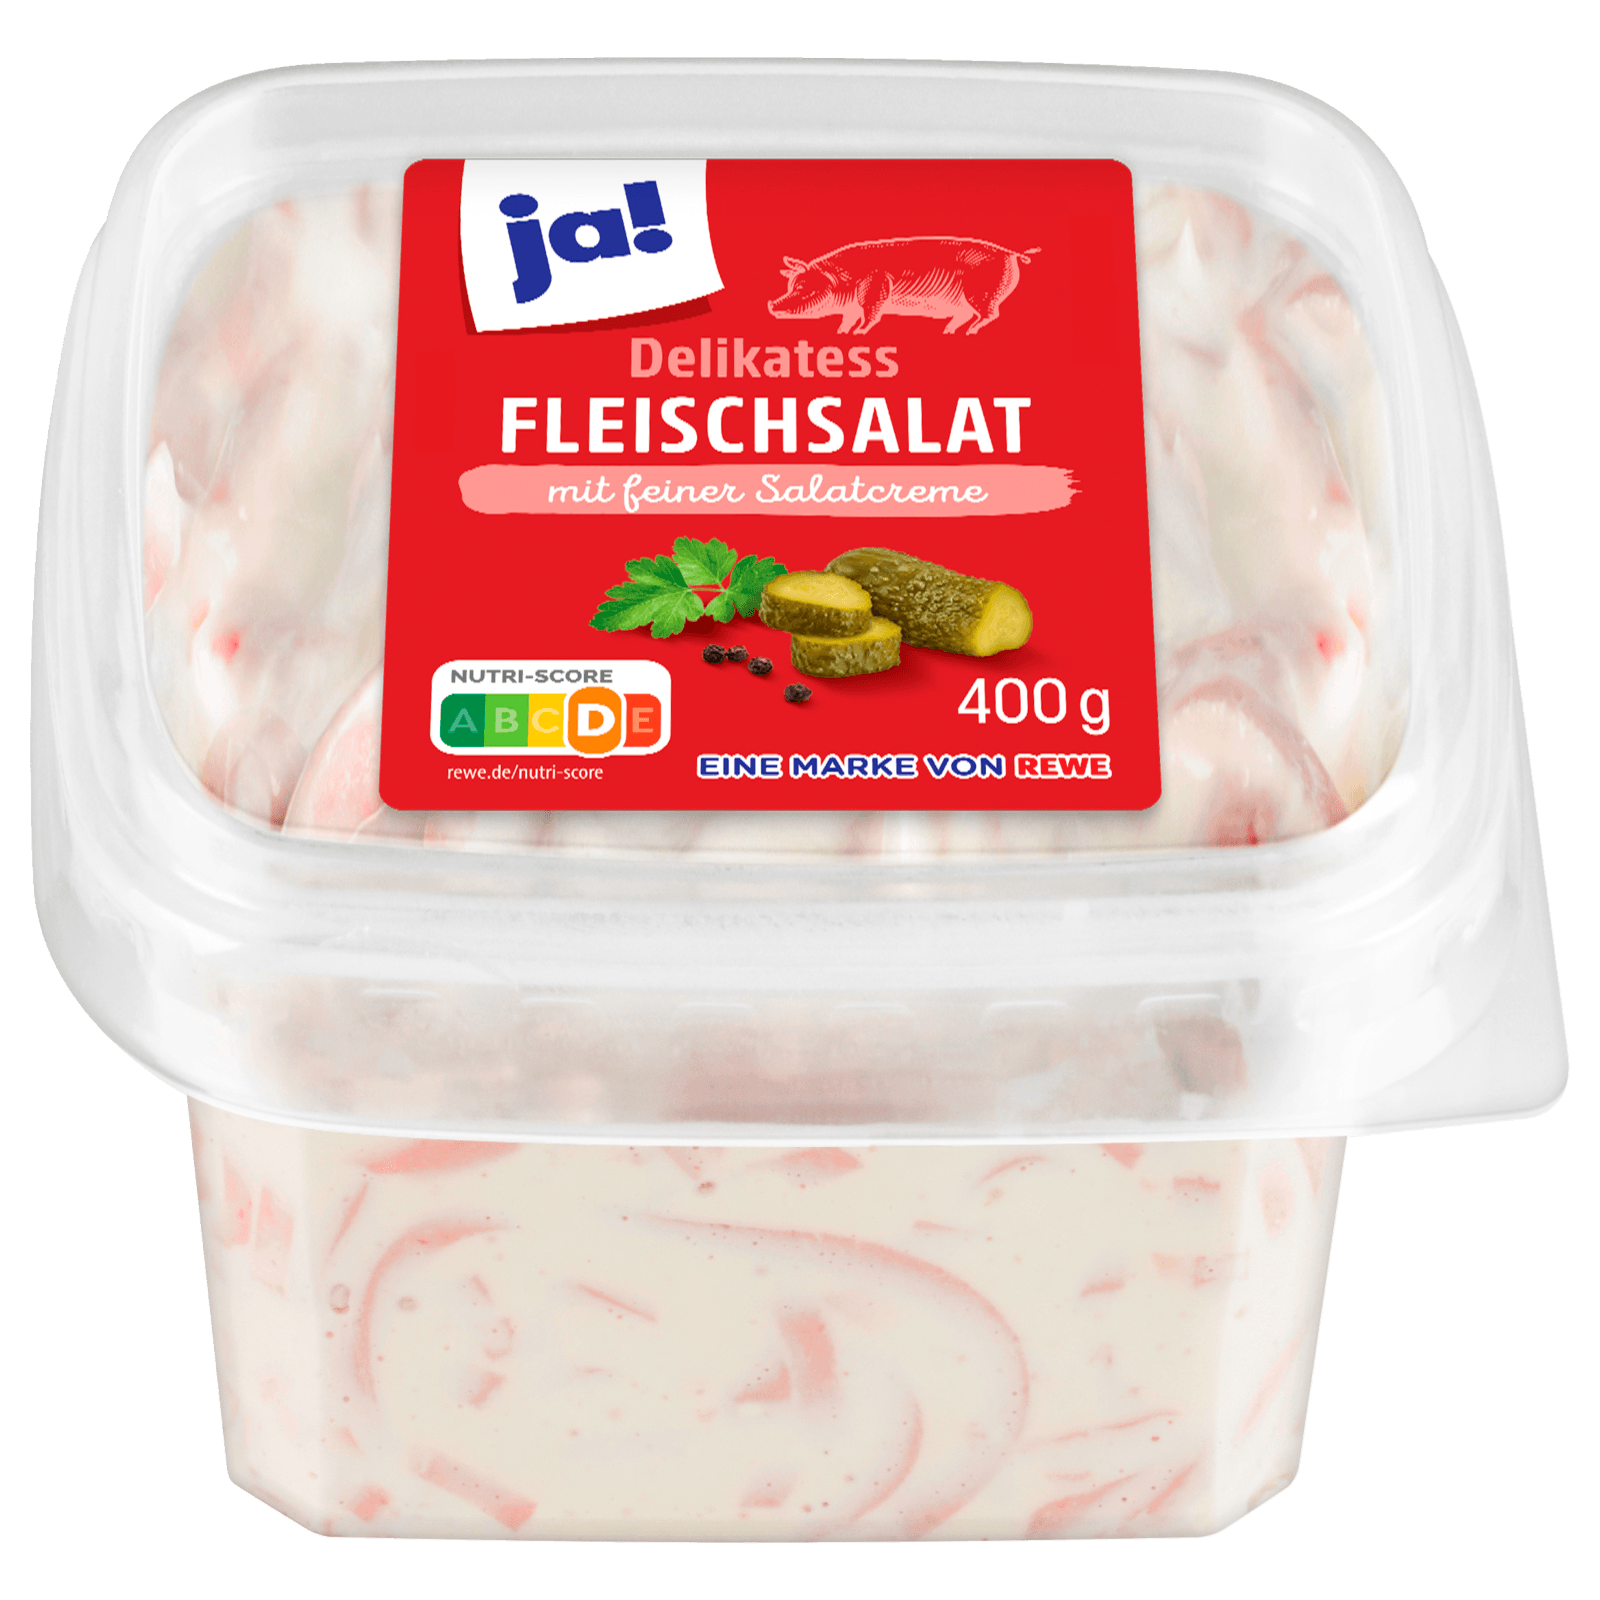 Delikatess-Fleischsalat 400g online ja! bestellen! REWE bei